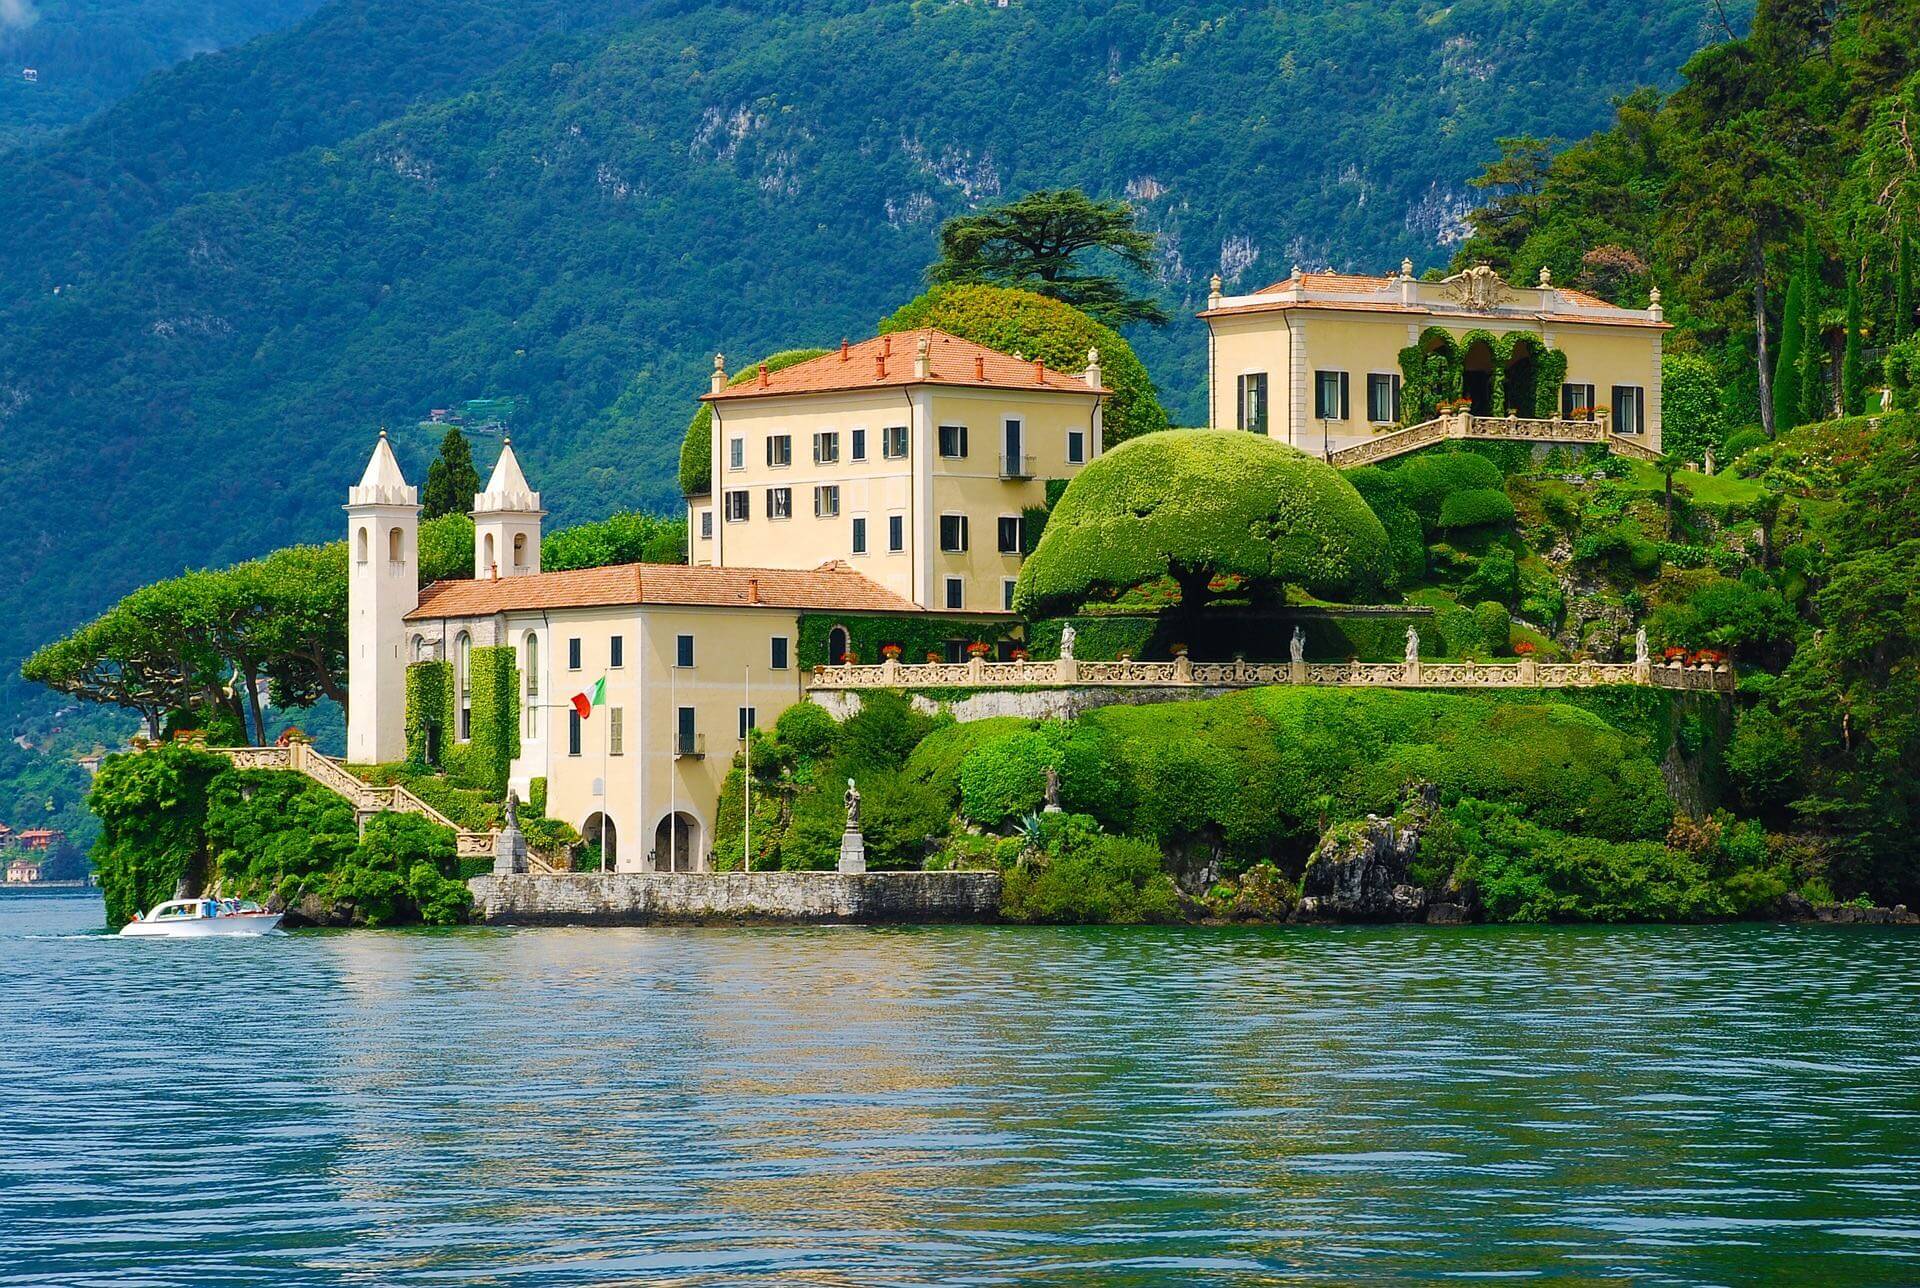 Bellagio, Menaggio, Tremezzina e Varenna, i borghi più belli del lago di Como aprono le porte al sapore con SloWeekend